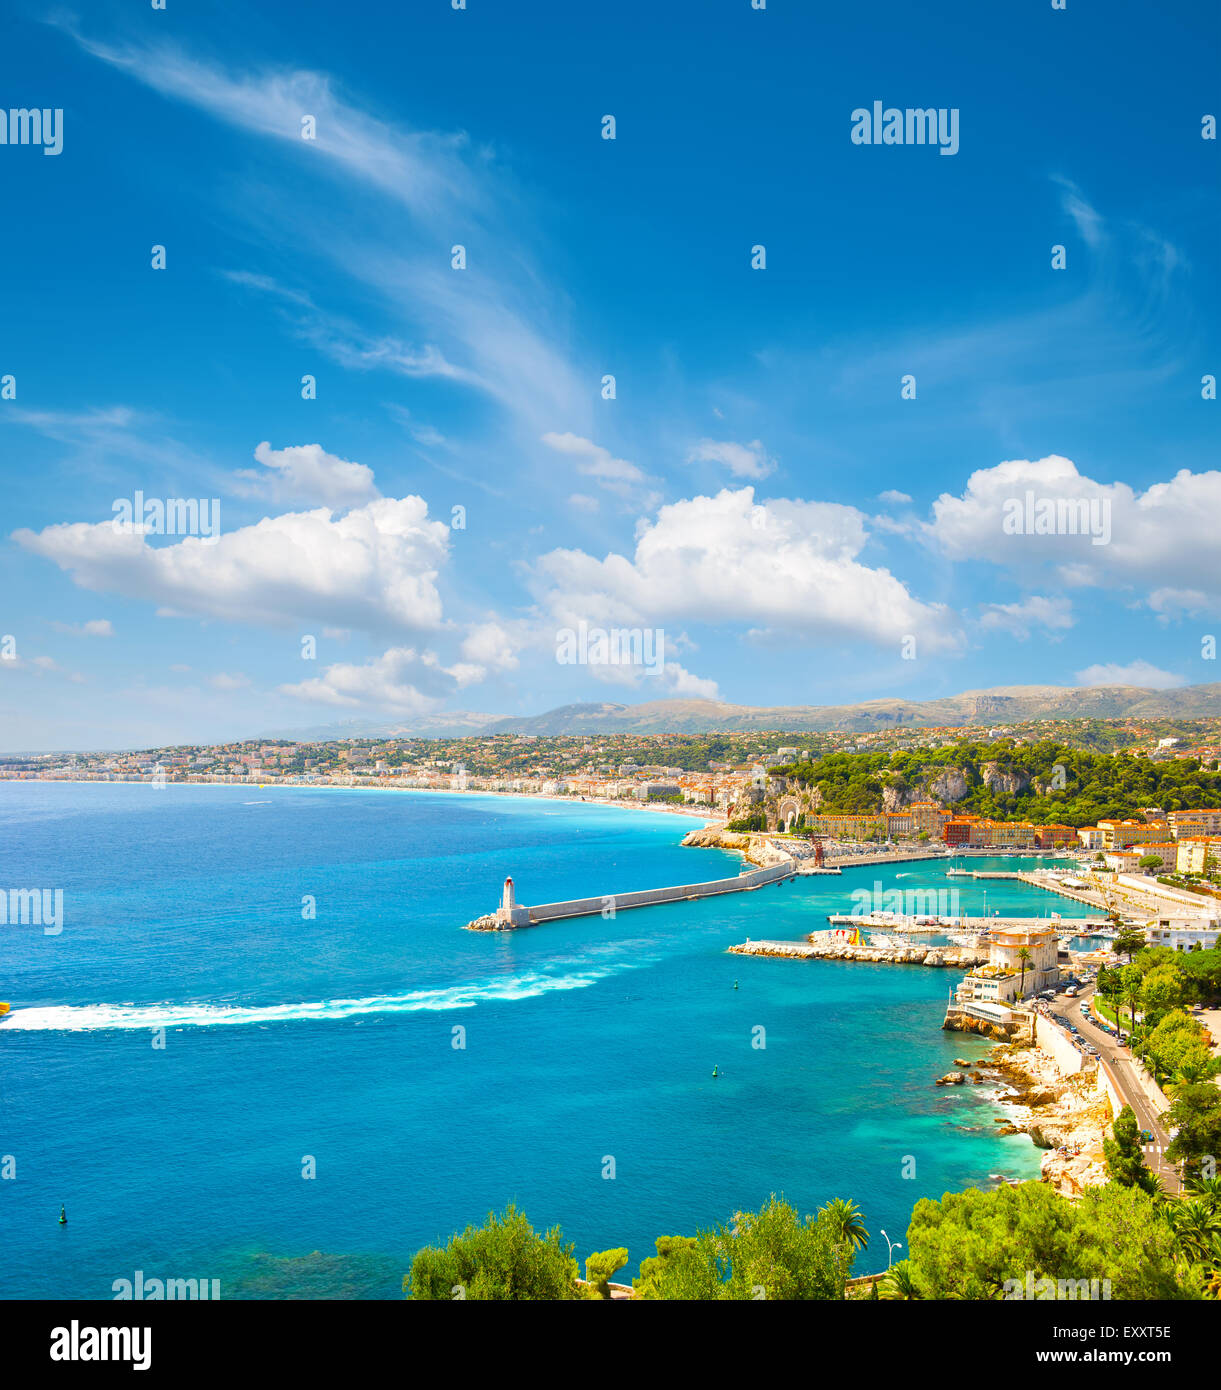 La mer turquoise et ciel bleu parfait. Avis de mediterranean resort, Nice, Côte d'Azur, France Banque D'Images